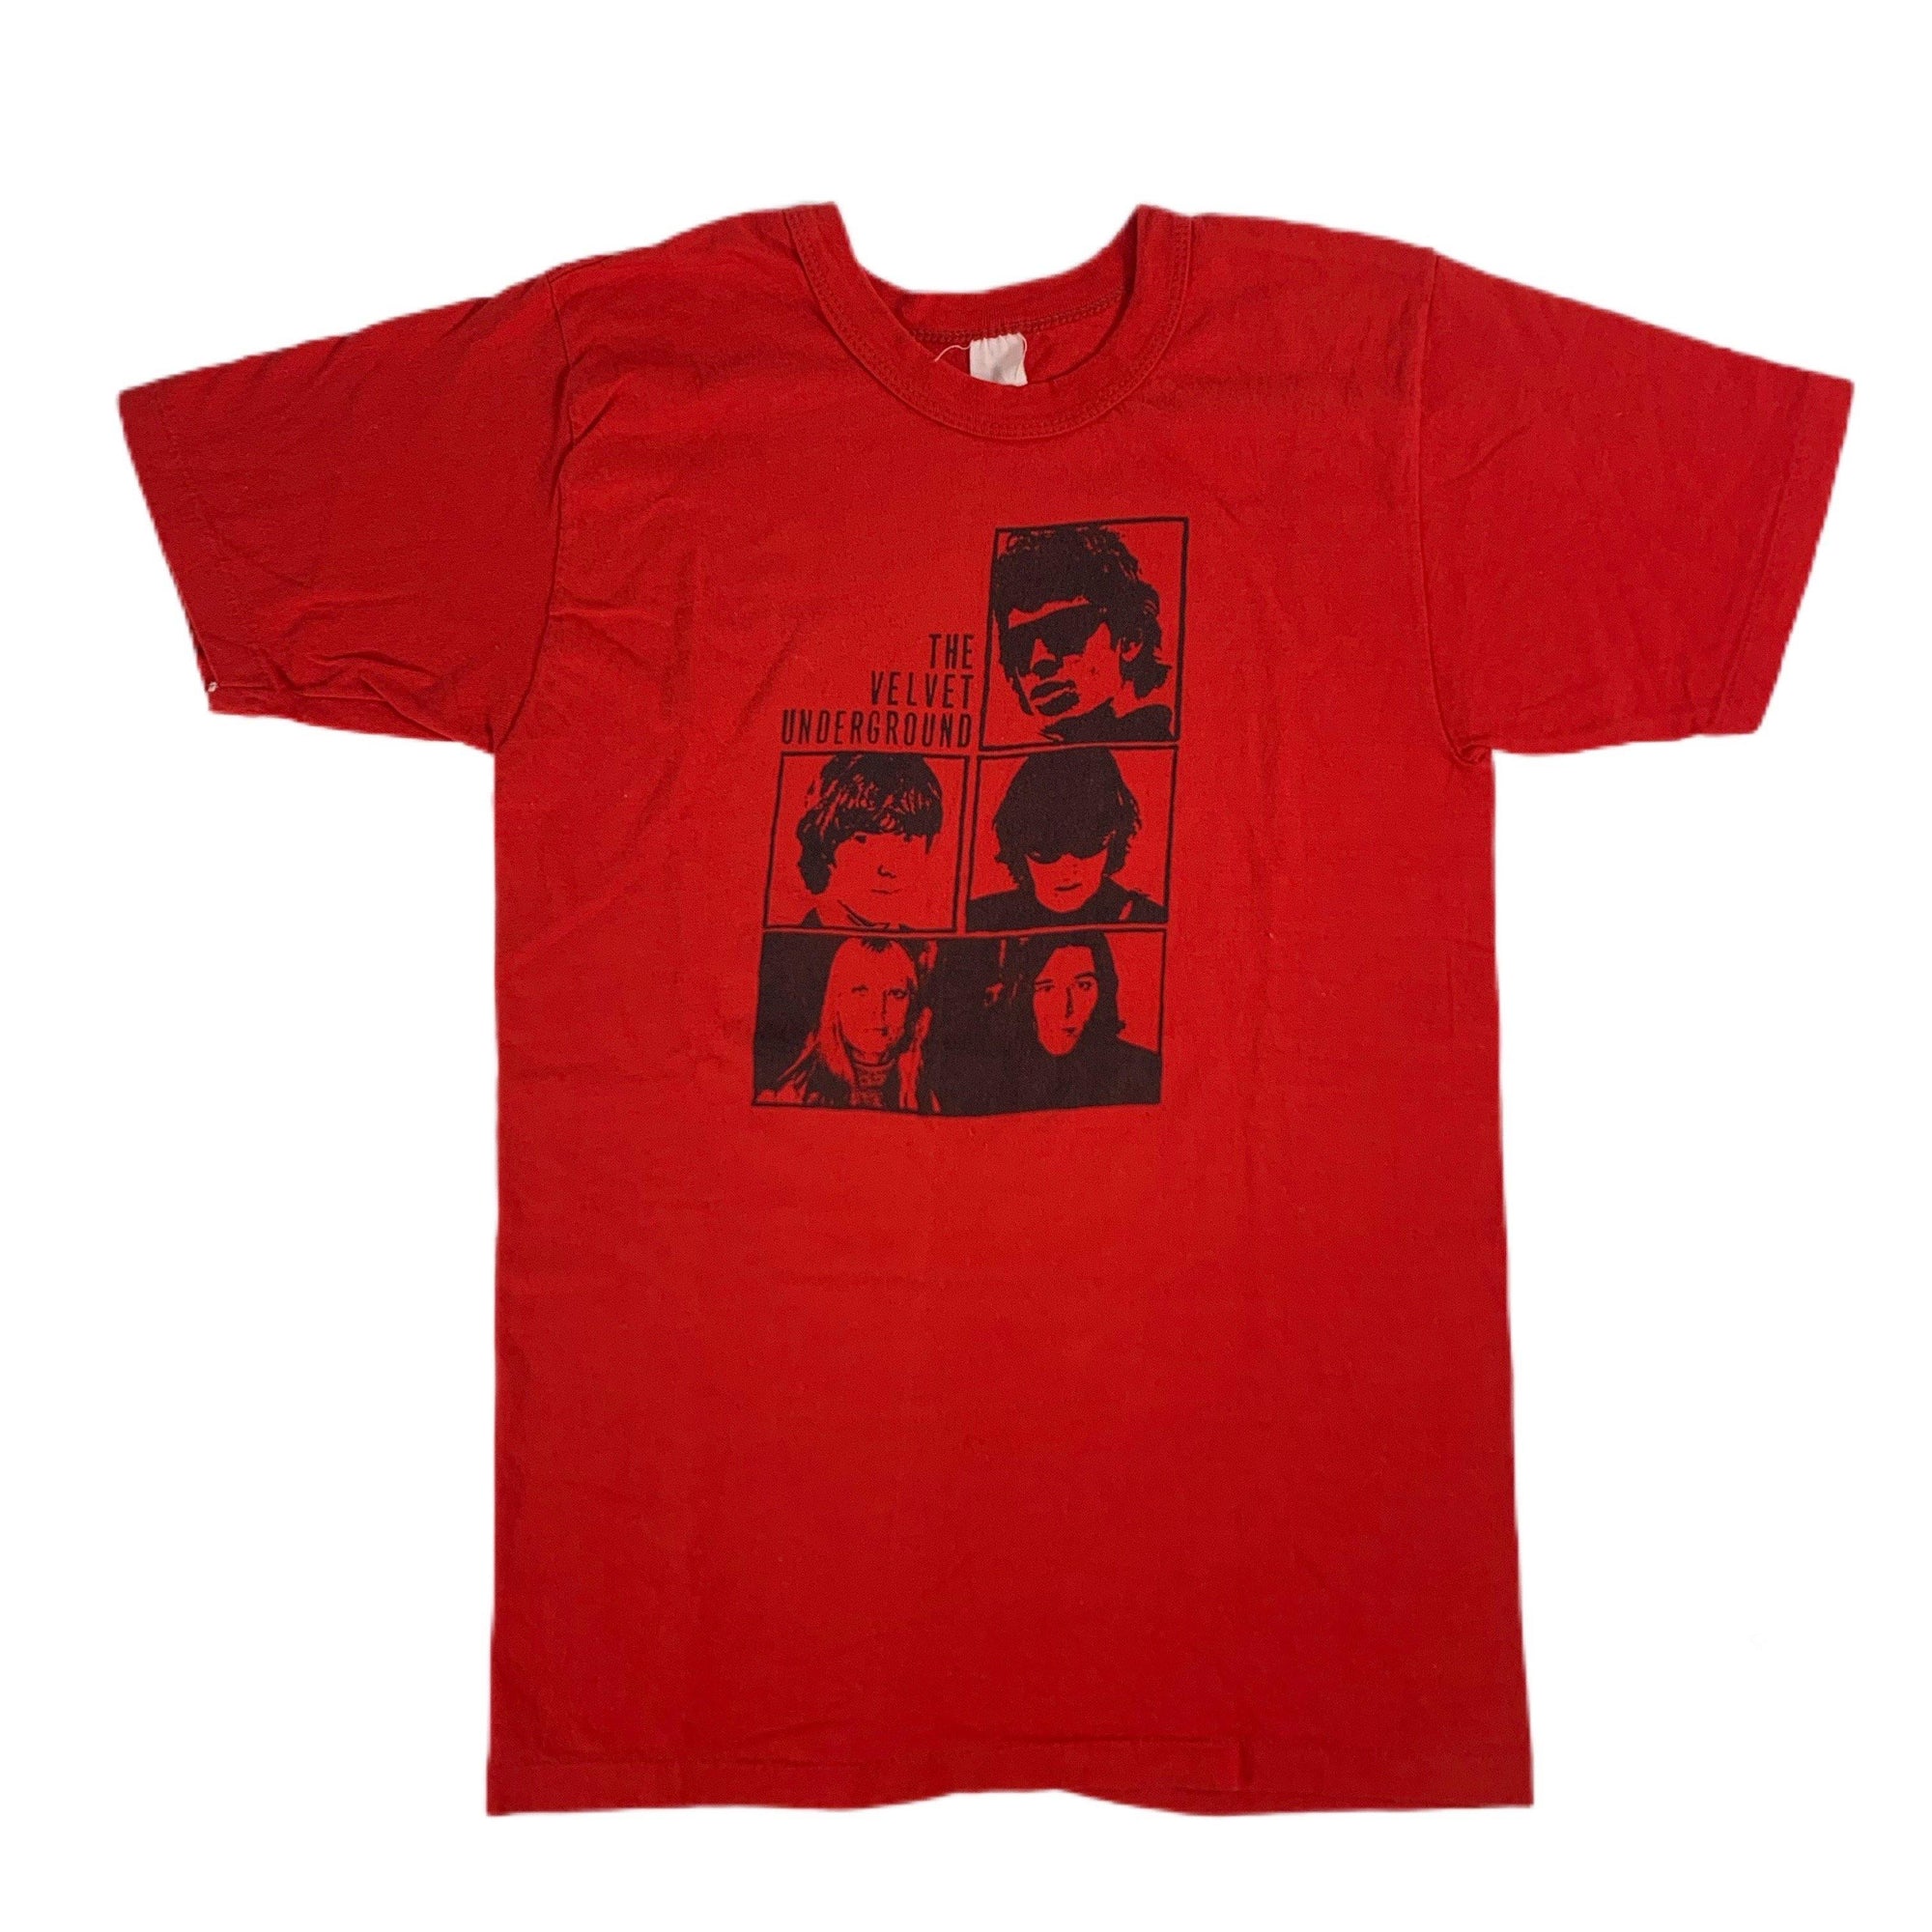 Vintage The Velvet Underground "Loaded" T-Shirt - jointcustodydc